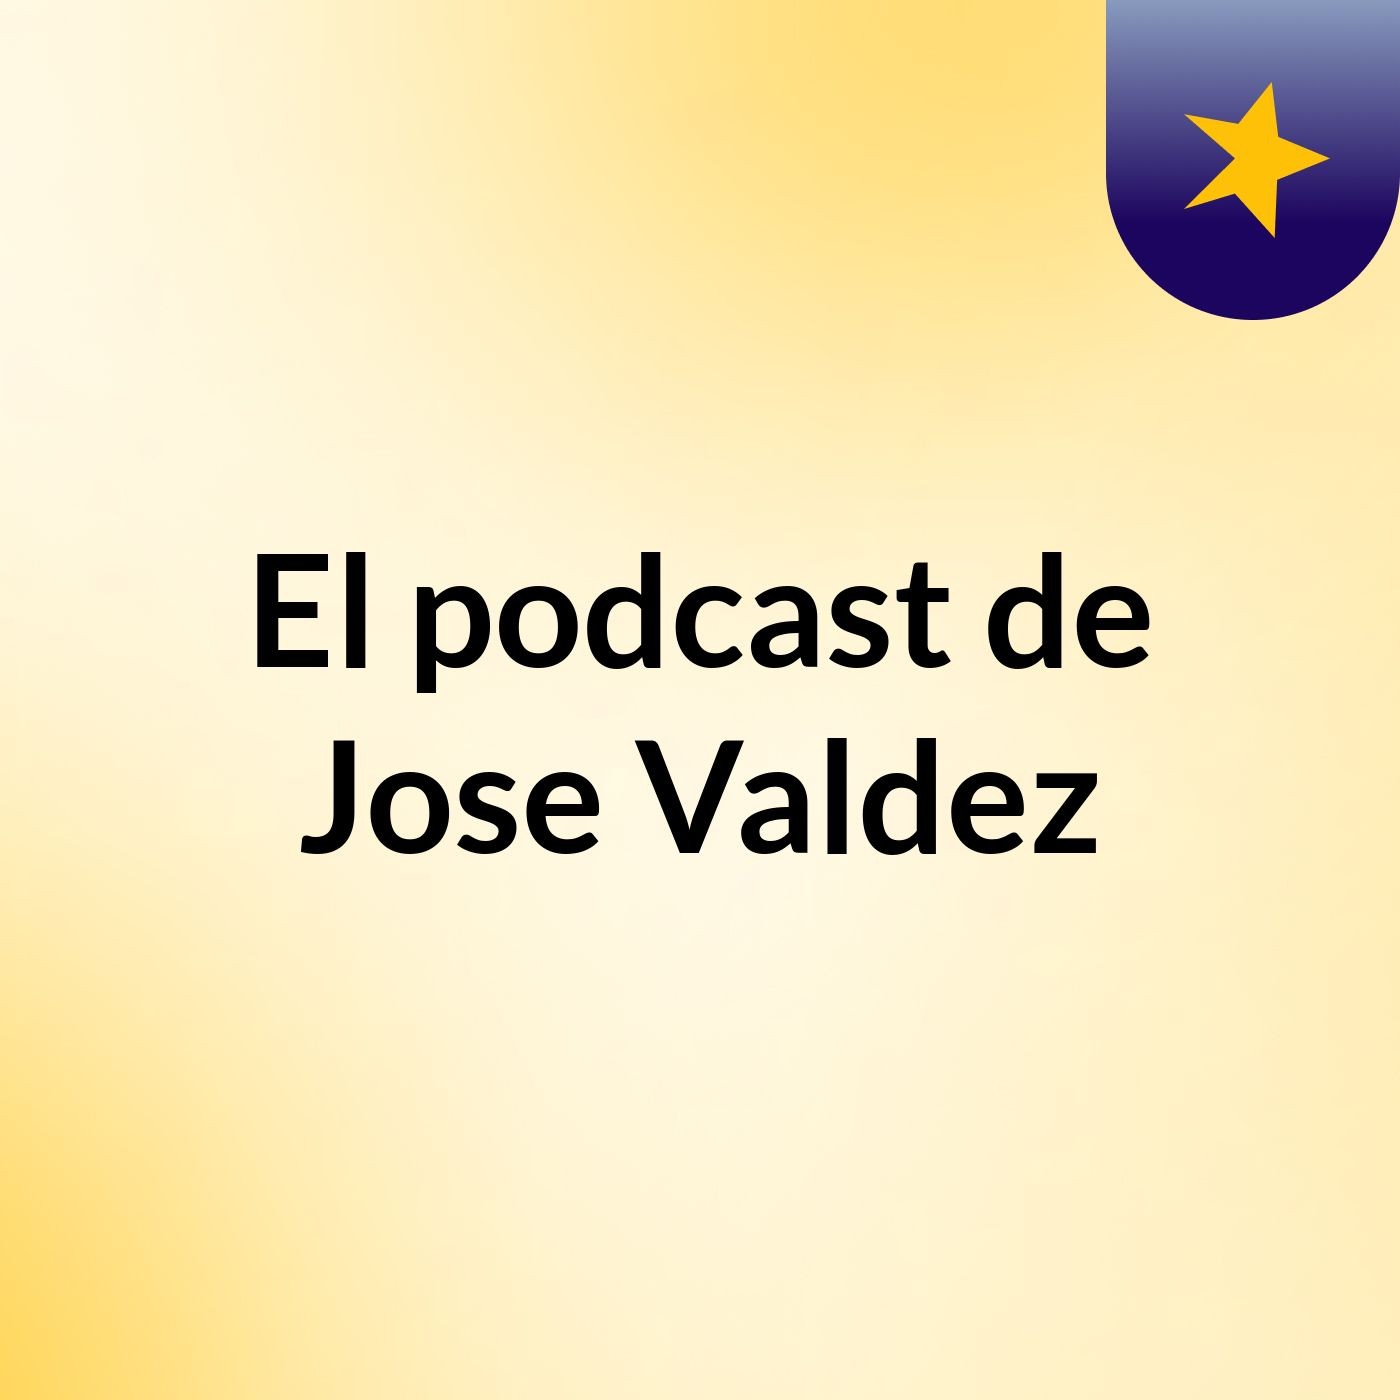 El podcast de Jose Valdez